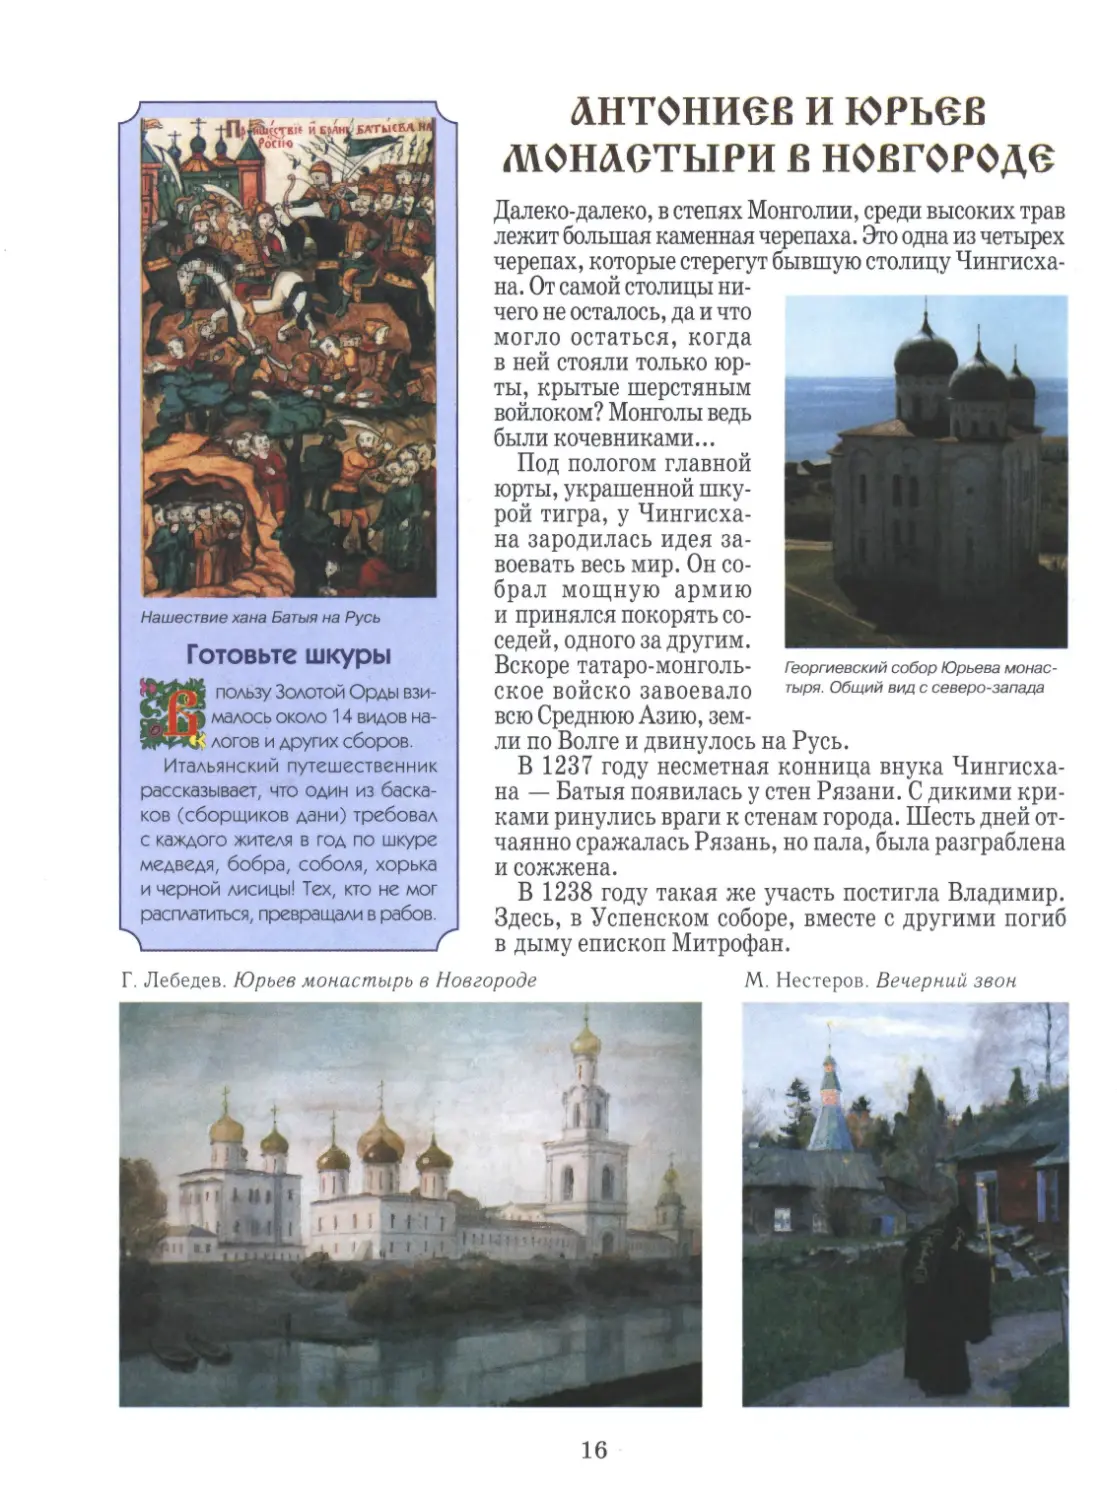 Антониев и Юрьев монастыри в Новгороде